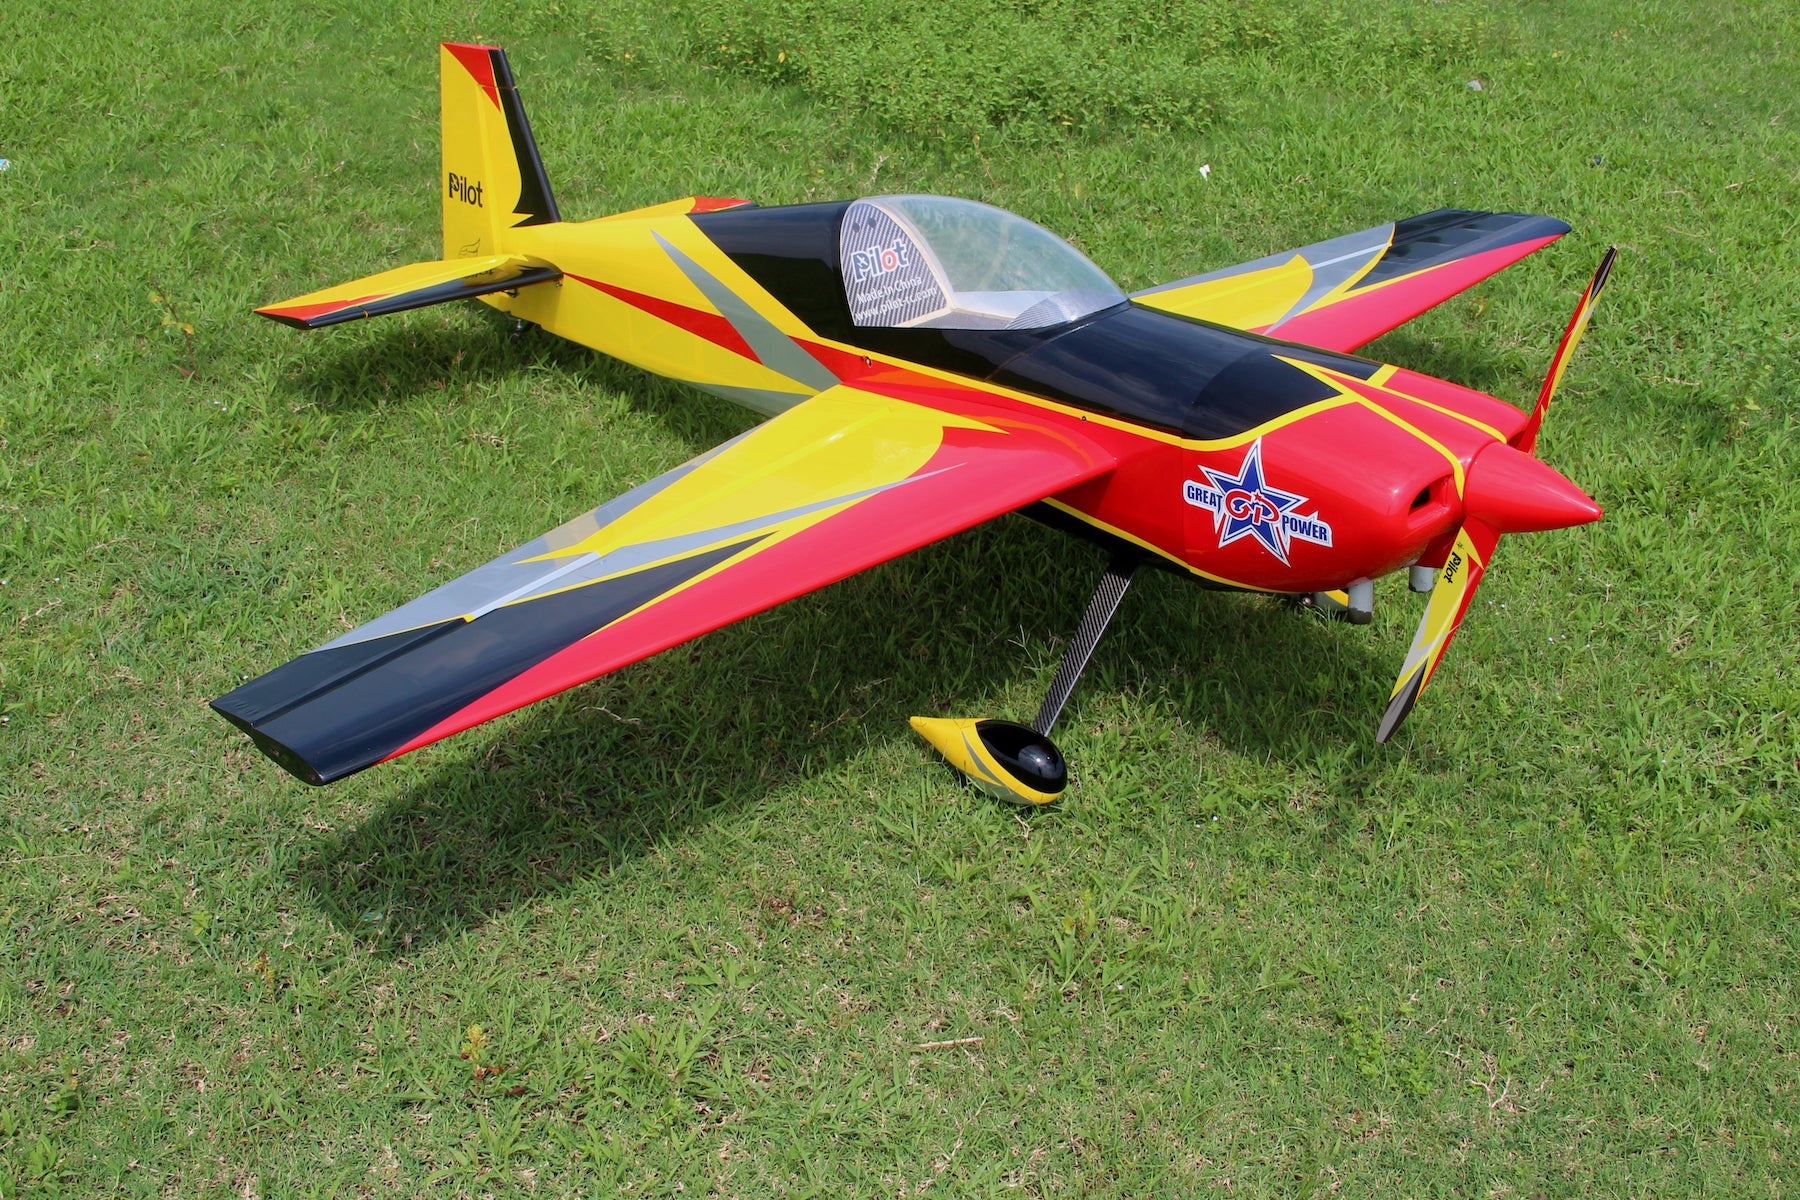 Pilot RC Slick 67In (Cf) Red/Yellow/Black (01) PIL665